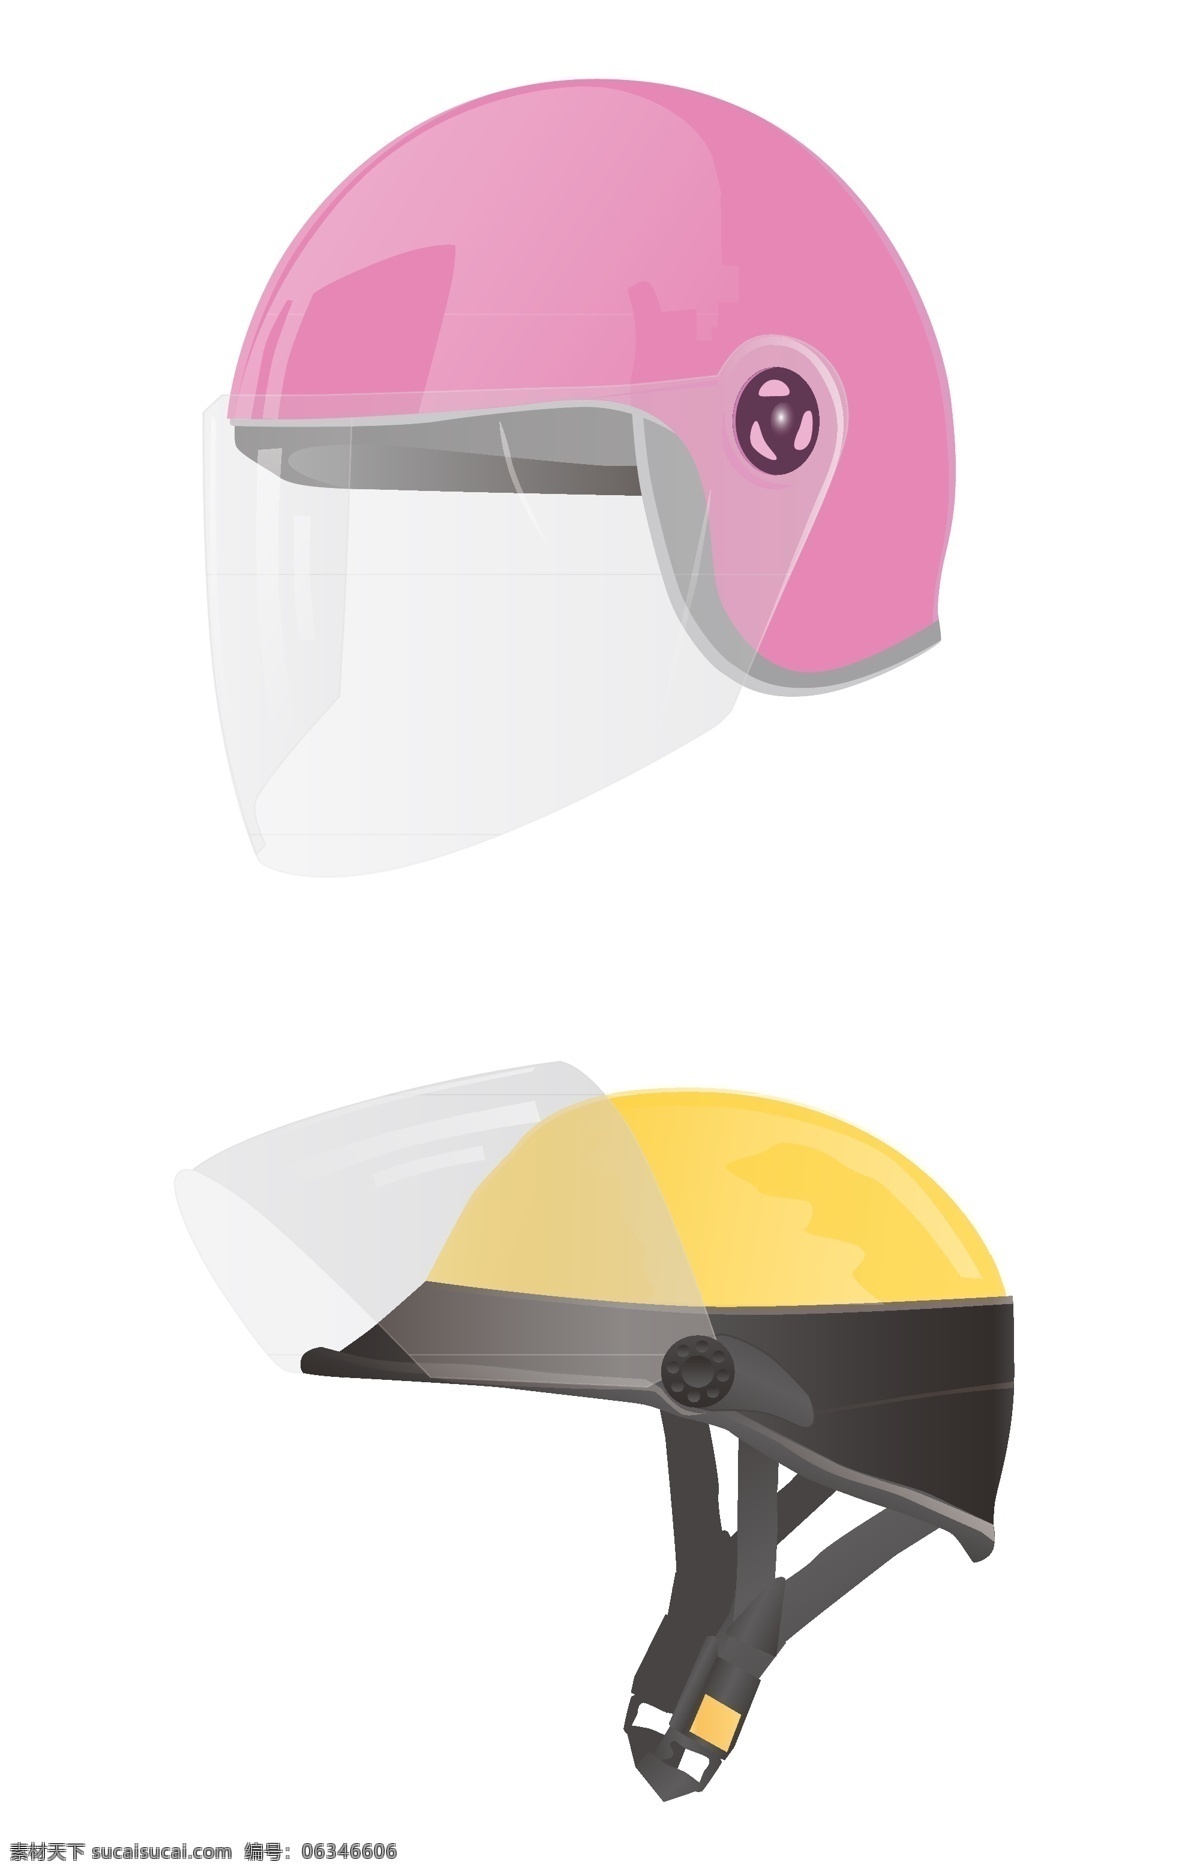 矢量头盔 电动车头盔 头盔 头盔设计 卡通 卡通设计